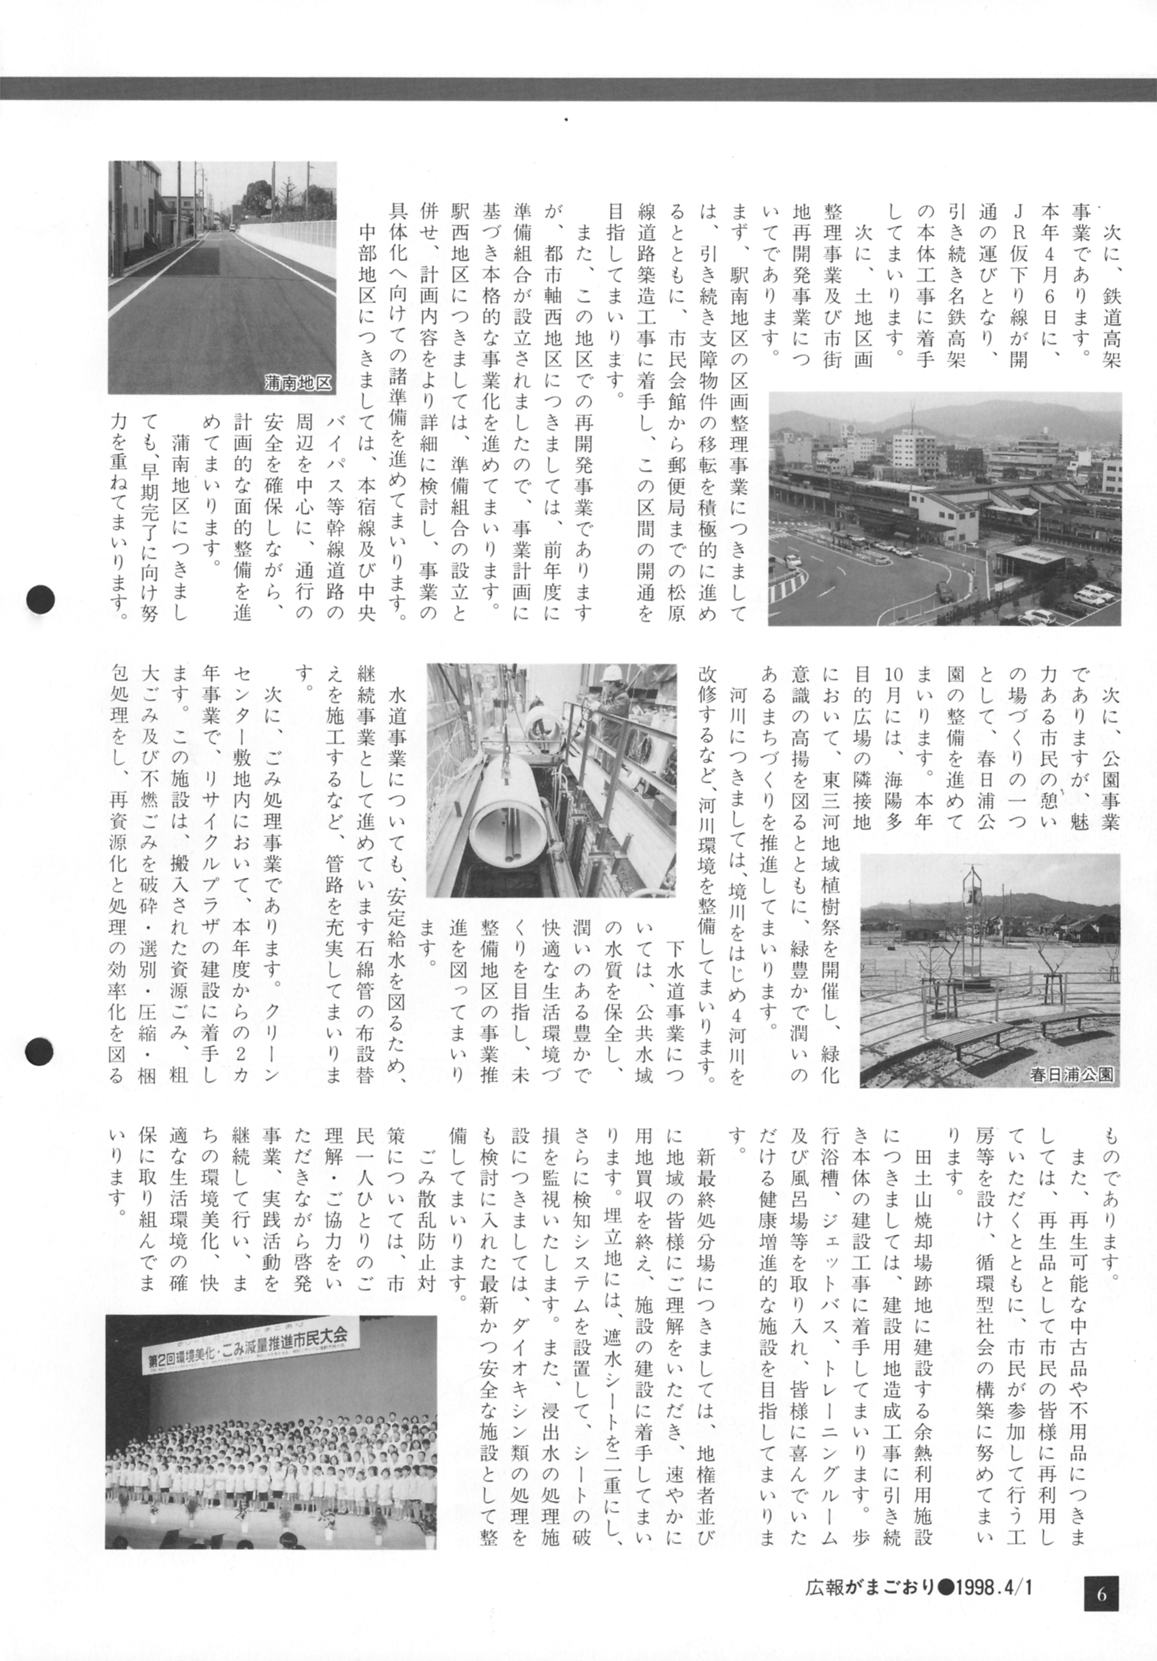 広報がまごおり 平成10年4月 愛知県蒲郡市公式ホームページ